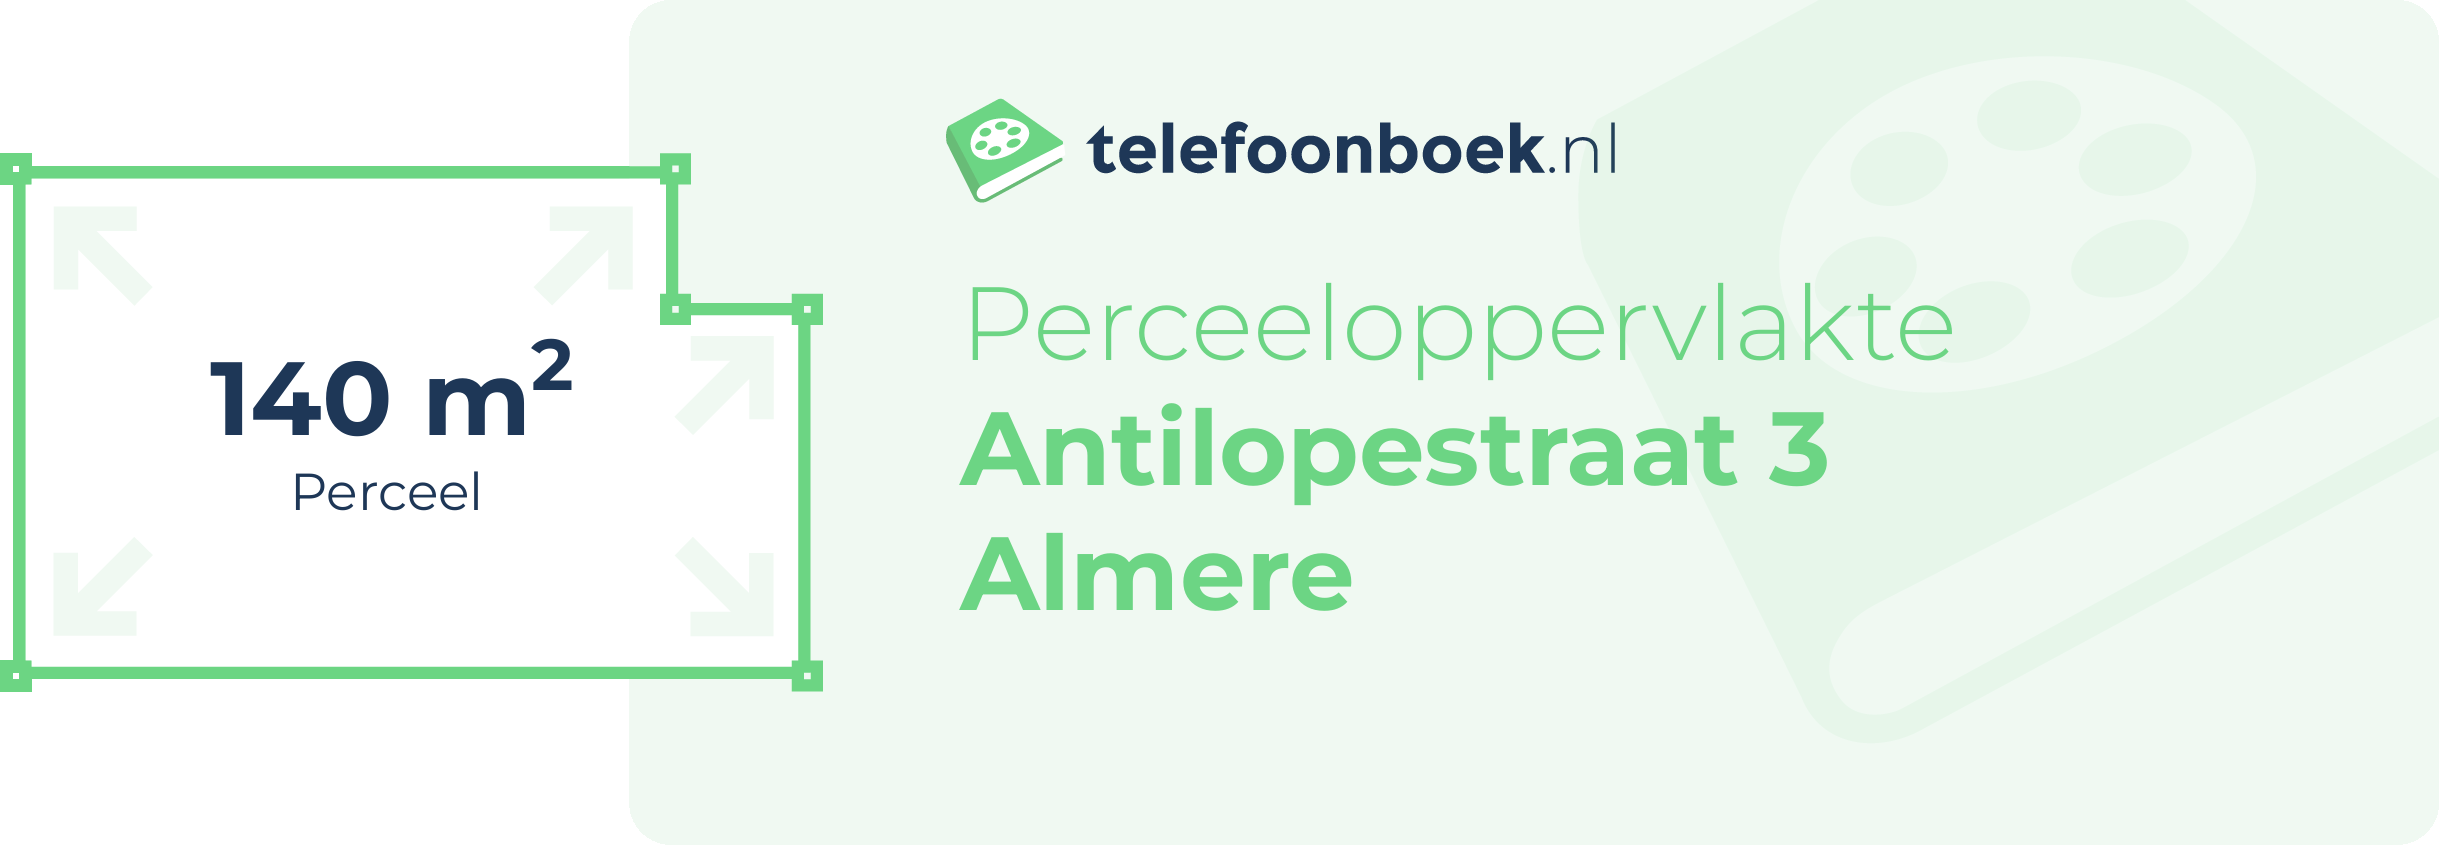 Perceeloppervlakte Antilopestraat 3 Almere